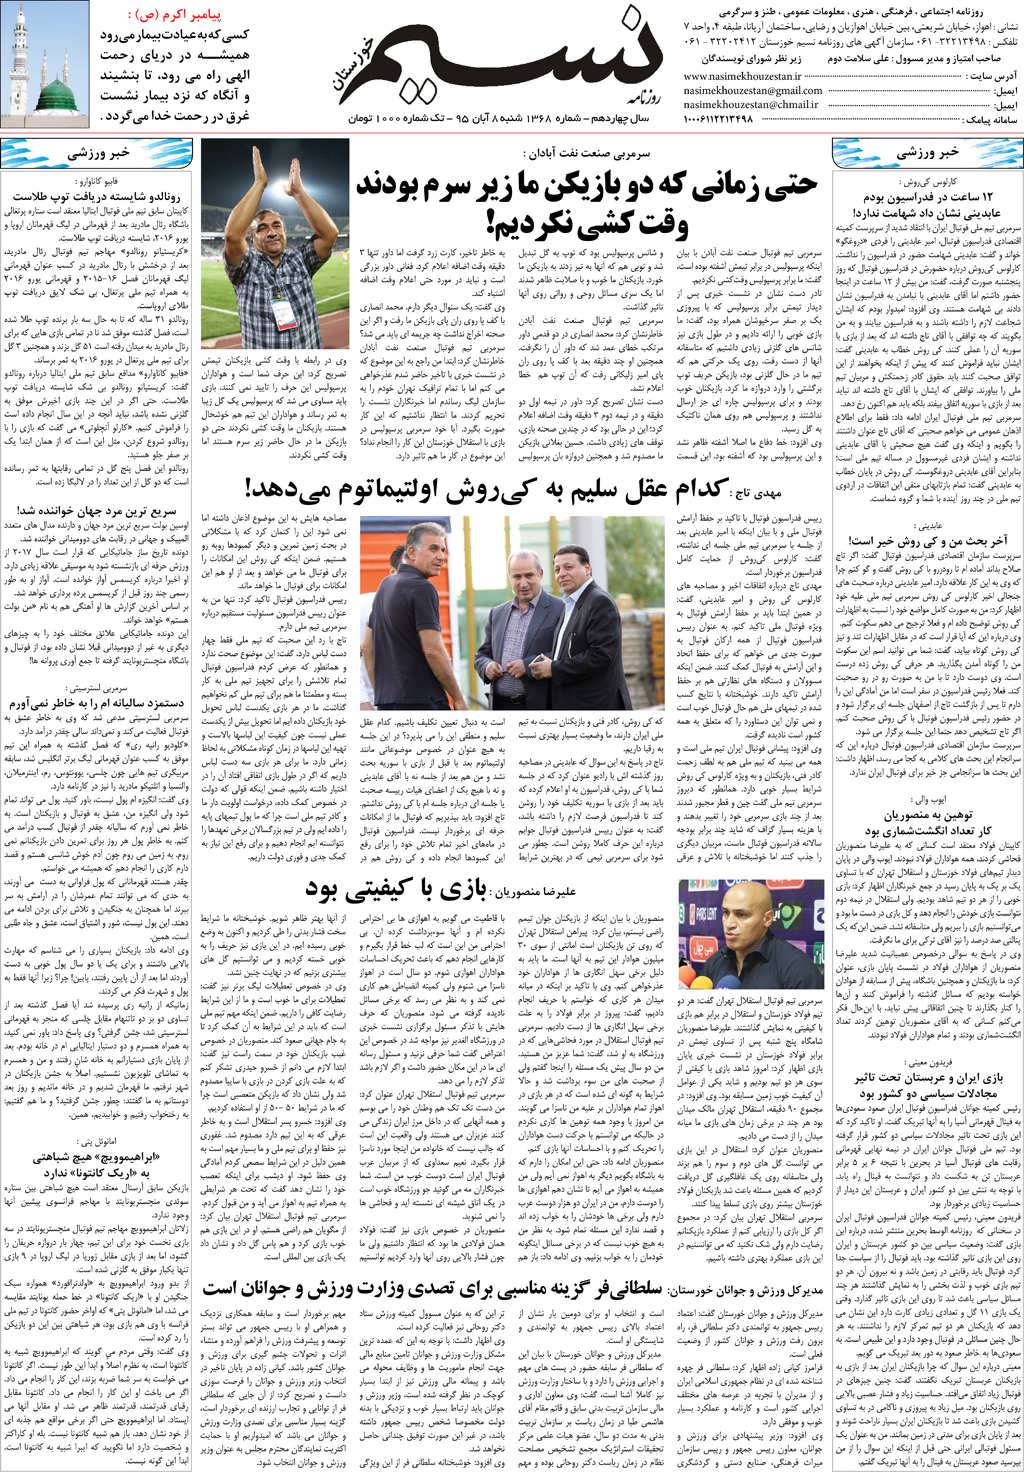 صفحه آخر روزنامه نسیم شماره 1368